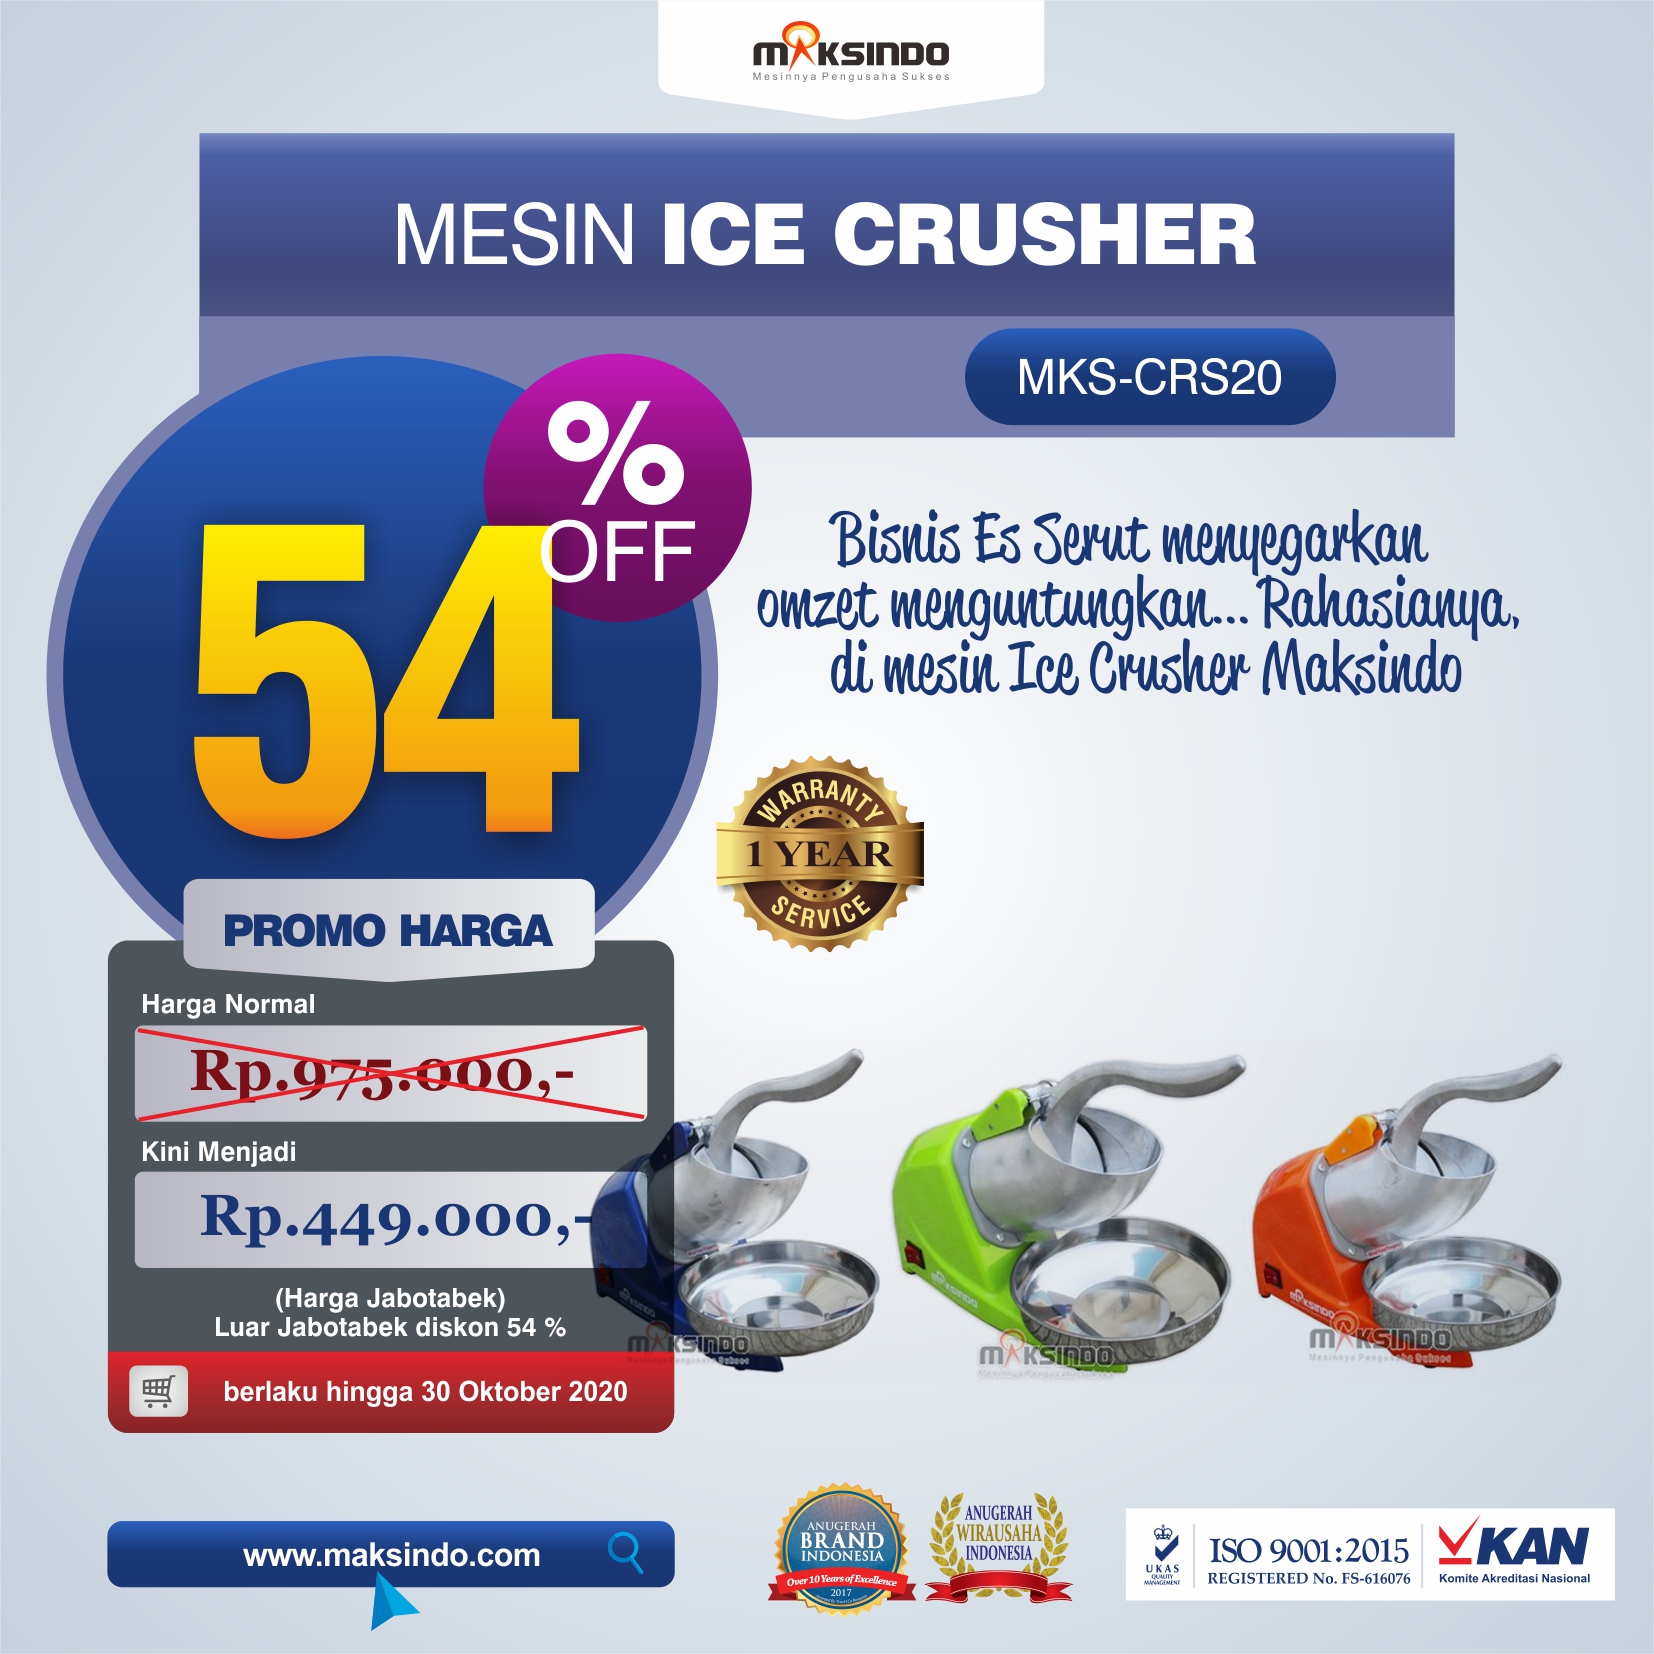 Jual Mesin Ice Crusher MKS-CRS20 di Jakarta